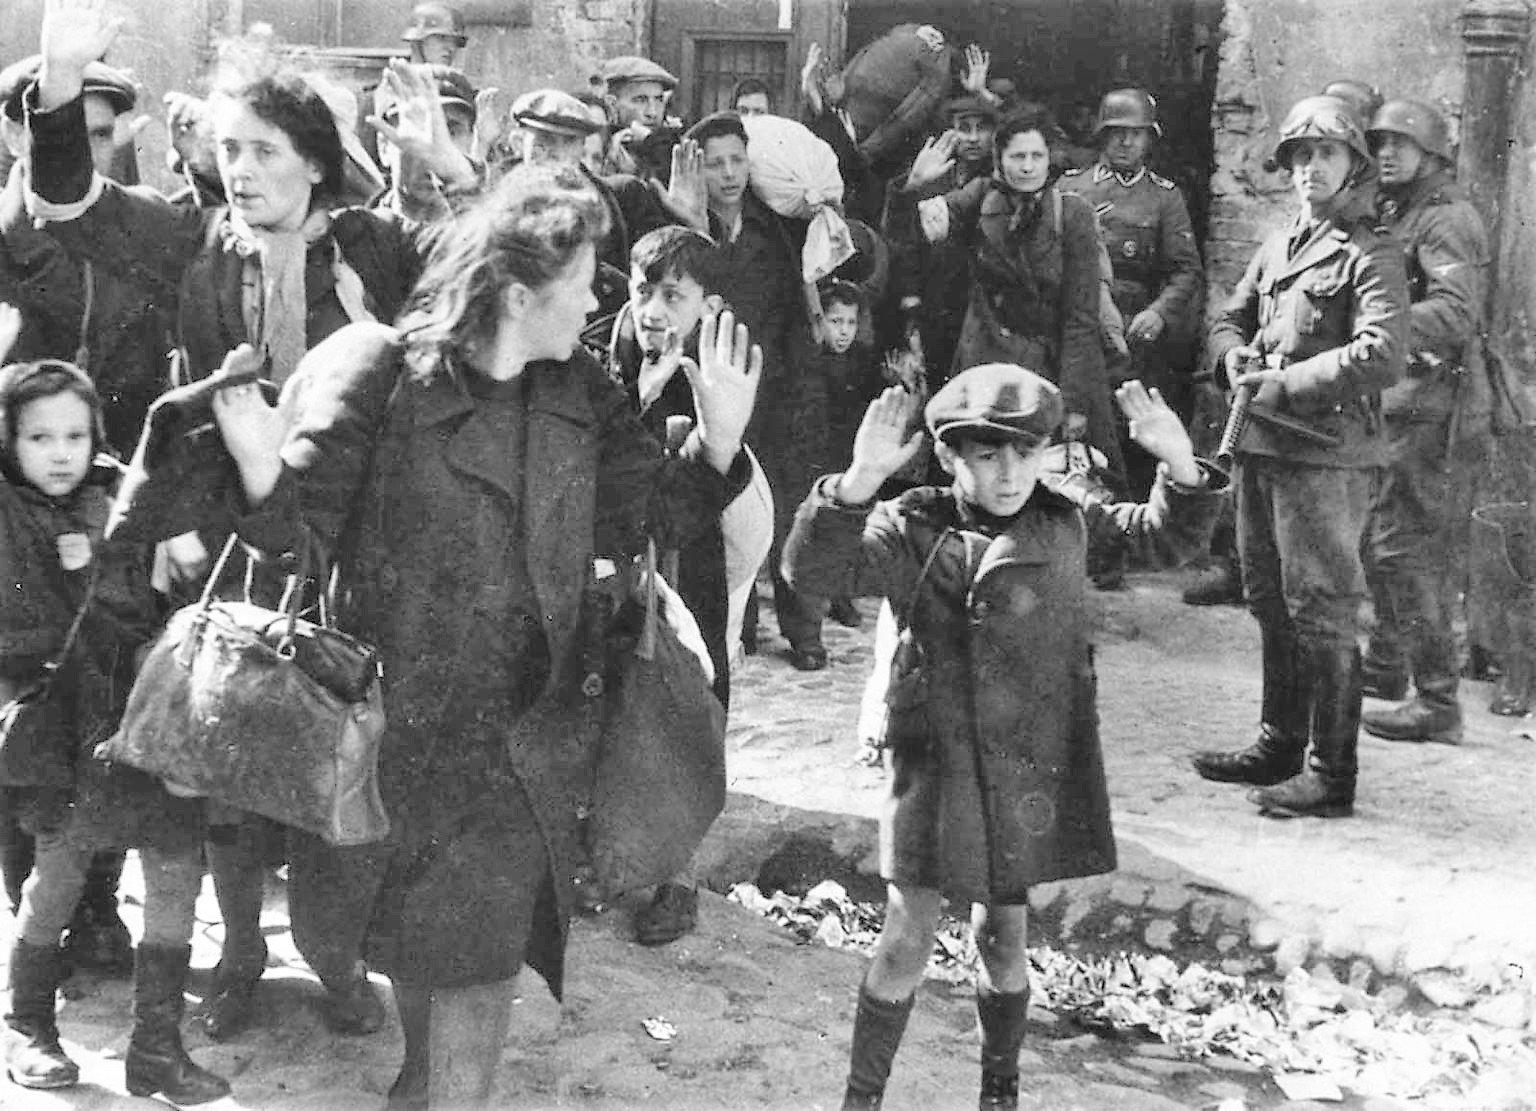 Żydzi pojmani przez SS w trakcie tłumienia powstania w getcie warszawskim